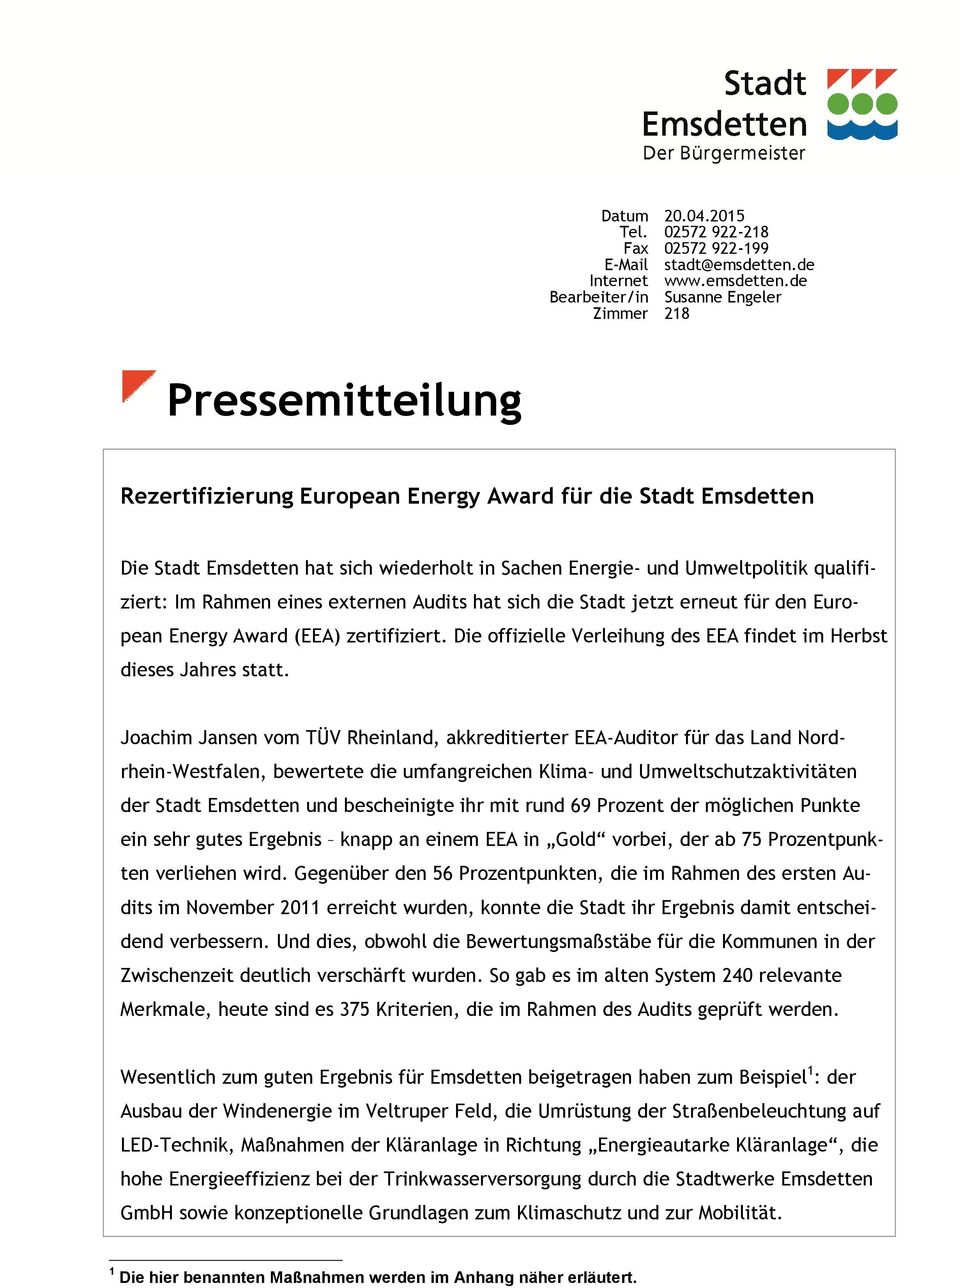 de Bearbeiter/in Susanne Engeler Zimmer 218 Pressemitteilung Rezertifizierung European Energy Award für die Stadt Emsdetten Die Stadt Emsdetten hat sich wiederholt in Sachen Energie- und